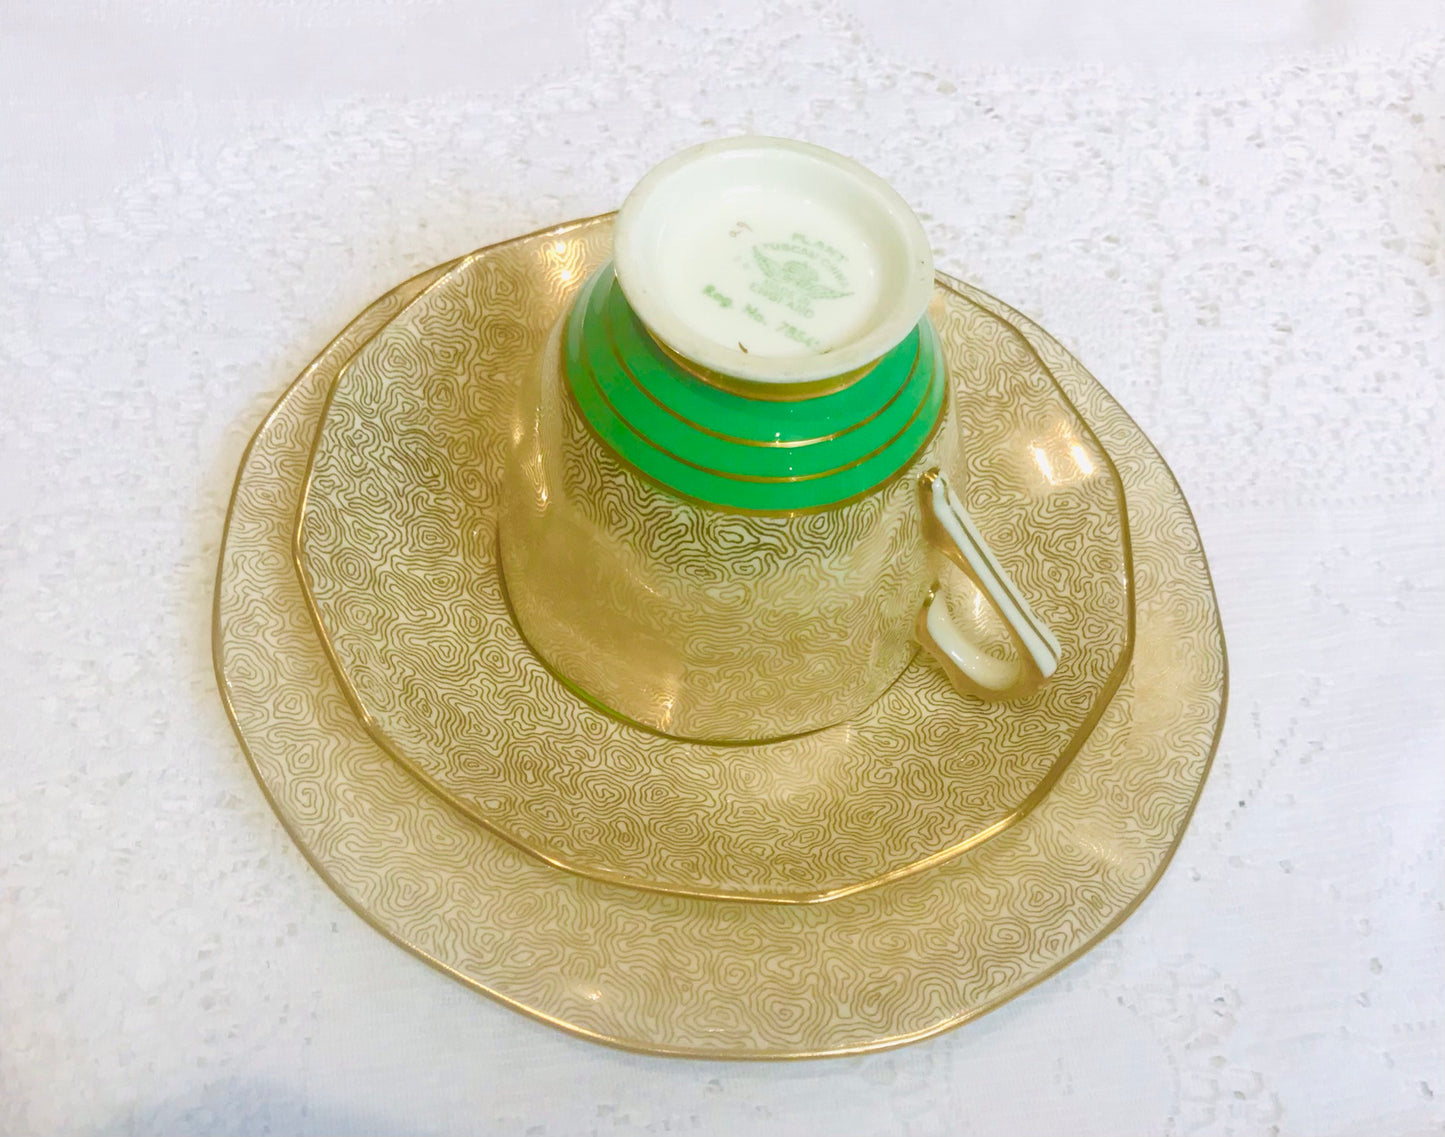 Kräftiges Art-Déco-Teetassen- und Untertassen-Set aus toskanischem Porzellan in Grün und Gold